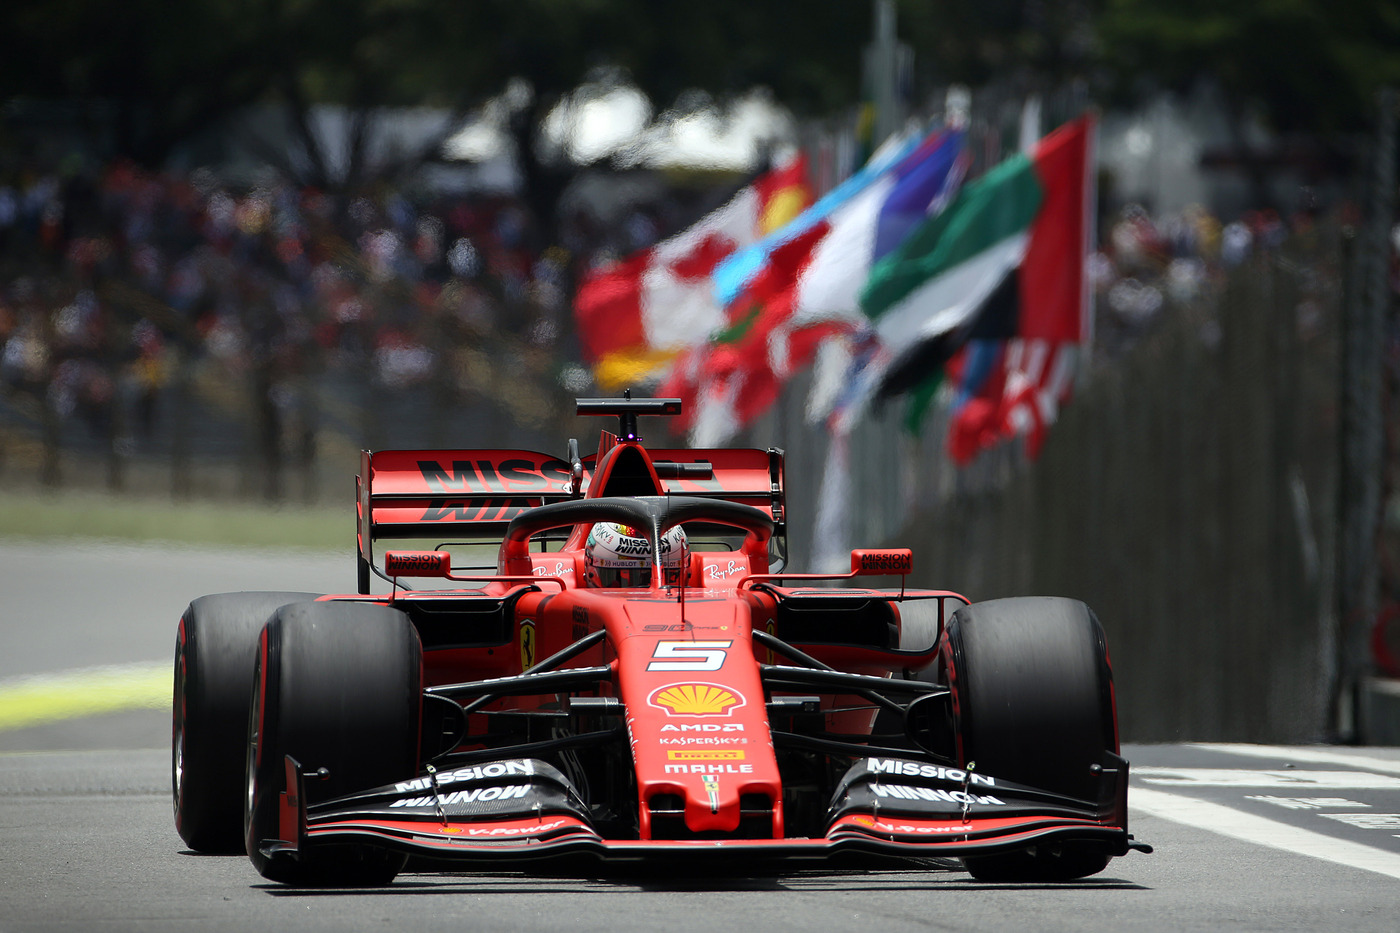 F1, presentazione Ferrari 2020 in tv gratis e in chiaro cè la diretta sulla RAI! Orario e programma